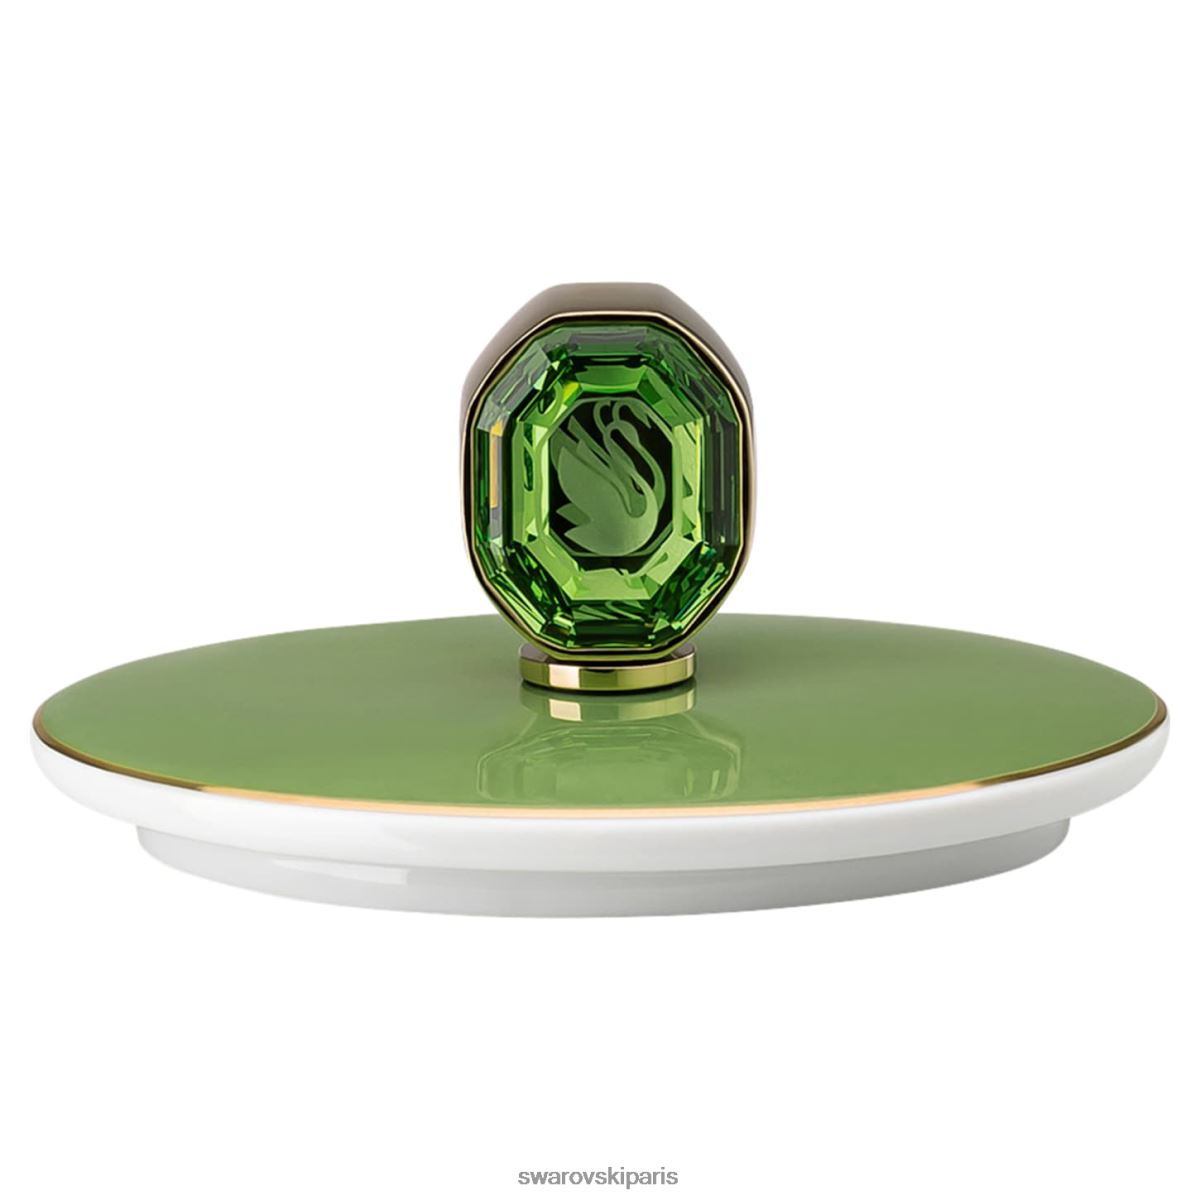 décorations Swarovski pot à crème signum porcelaine, vert RZD0XJ1727